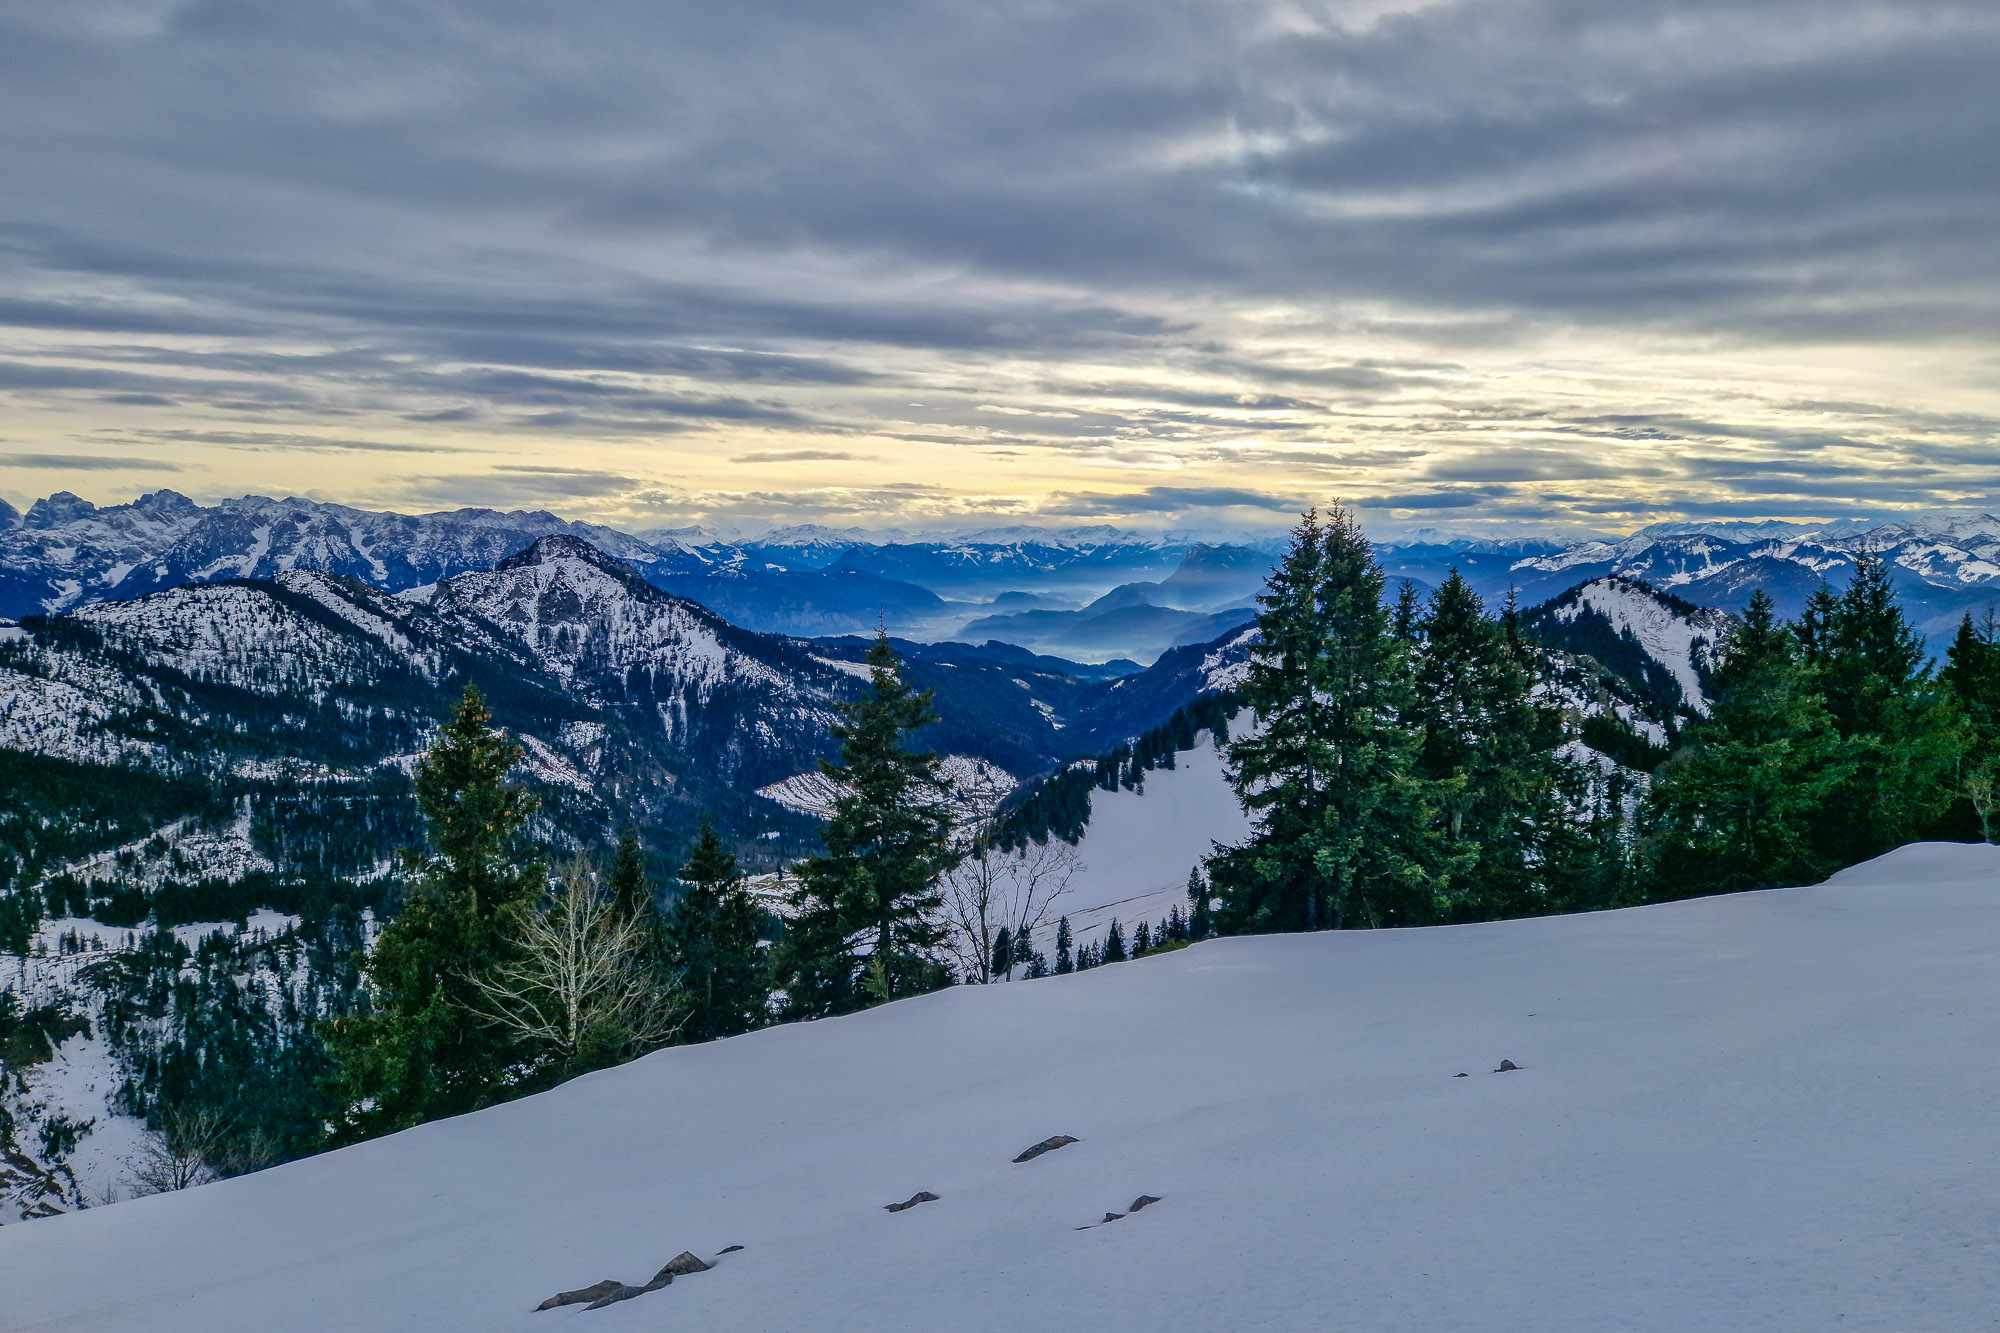 Schneeschuh Wochenende
Chiemgau
Hochrieshütte
Hochries
Schneeschuhwandern
Anfänger
Winterwandern